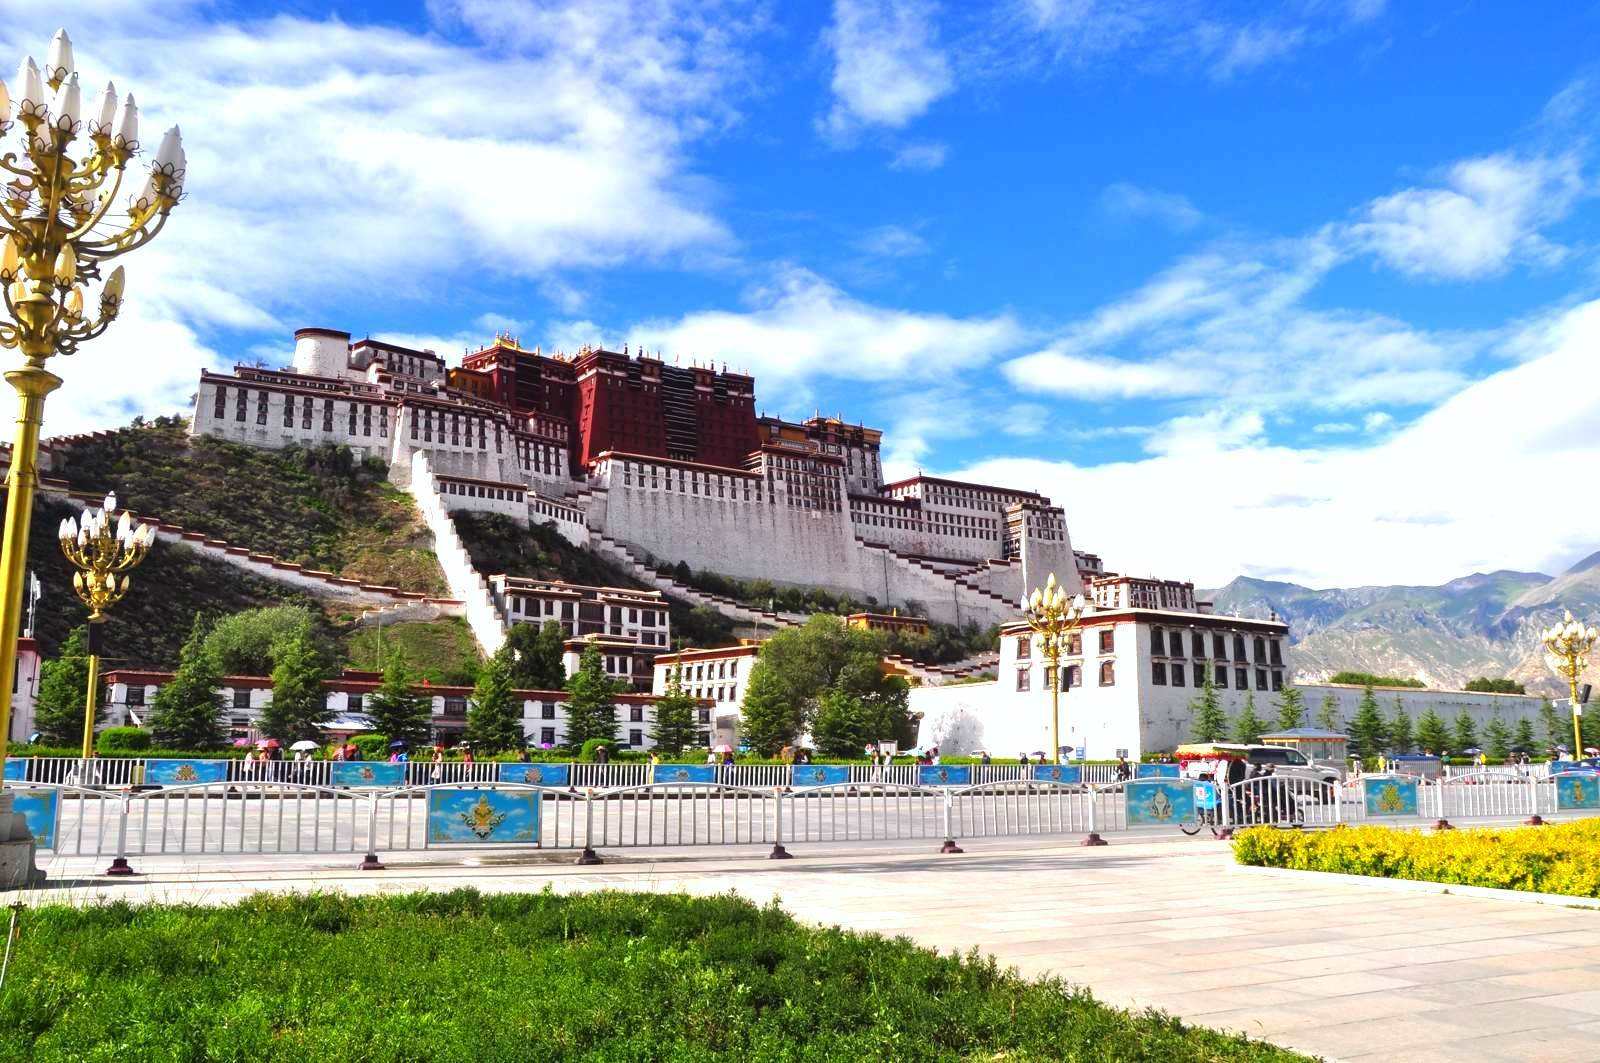 去一趟西藏要花多少钱?去西藏旅游应该做哪些准备？